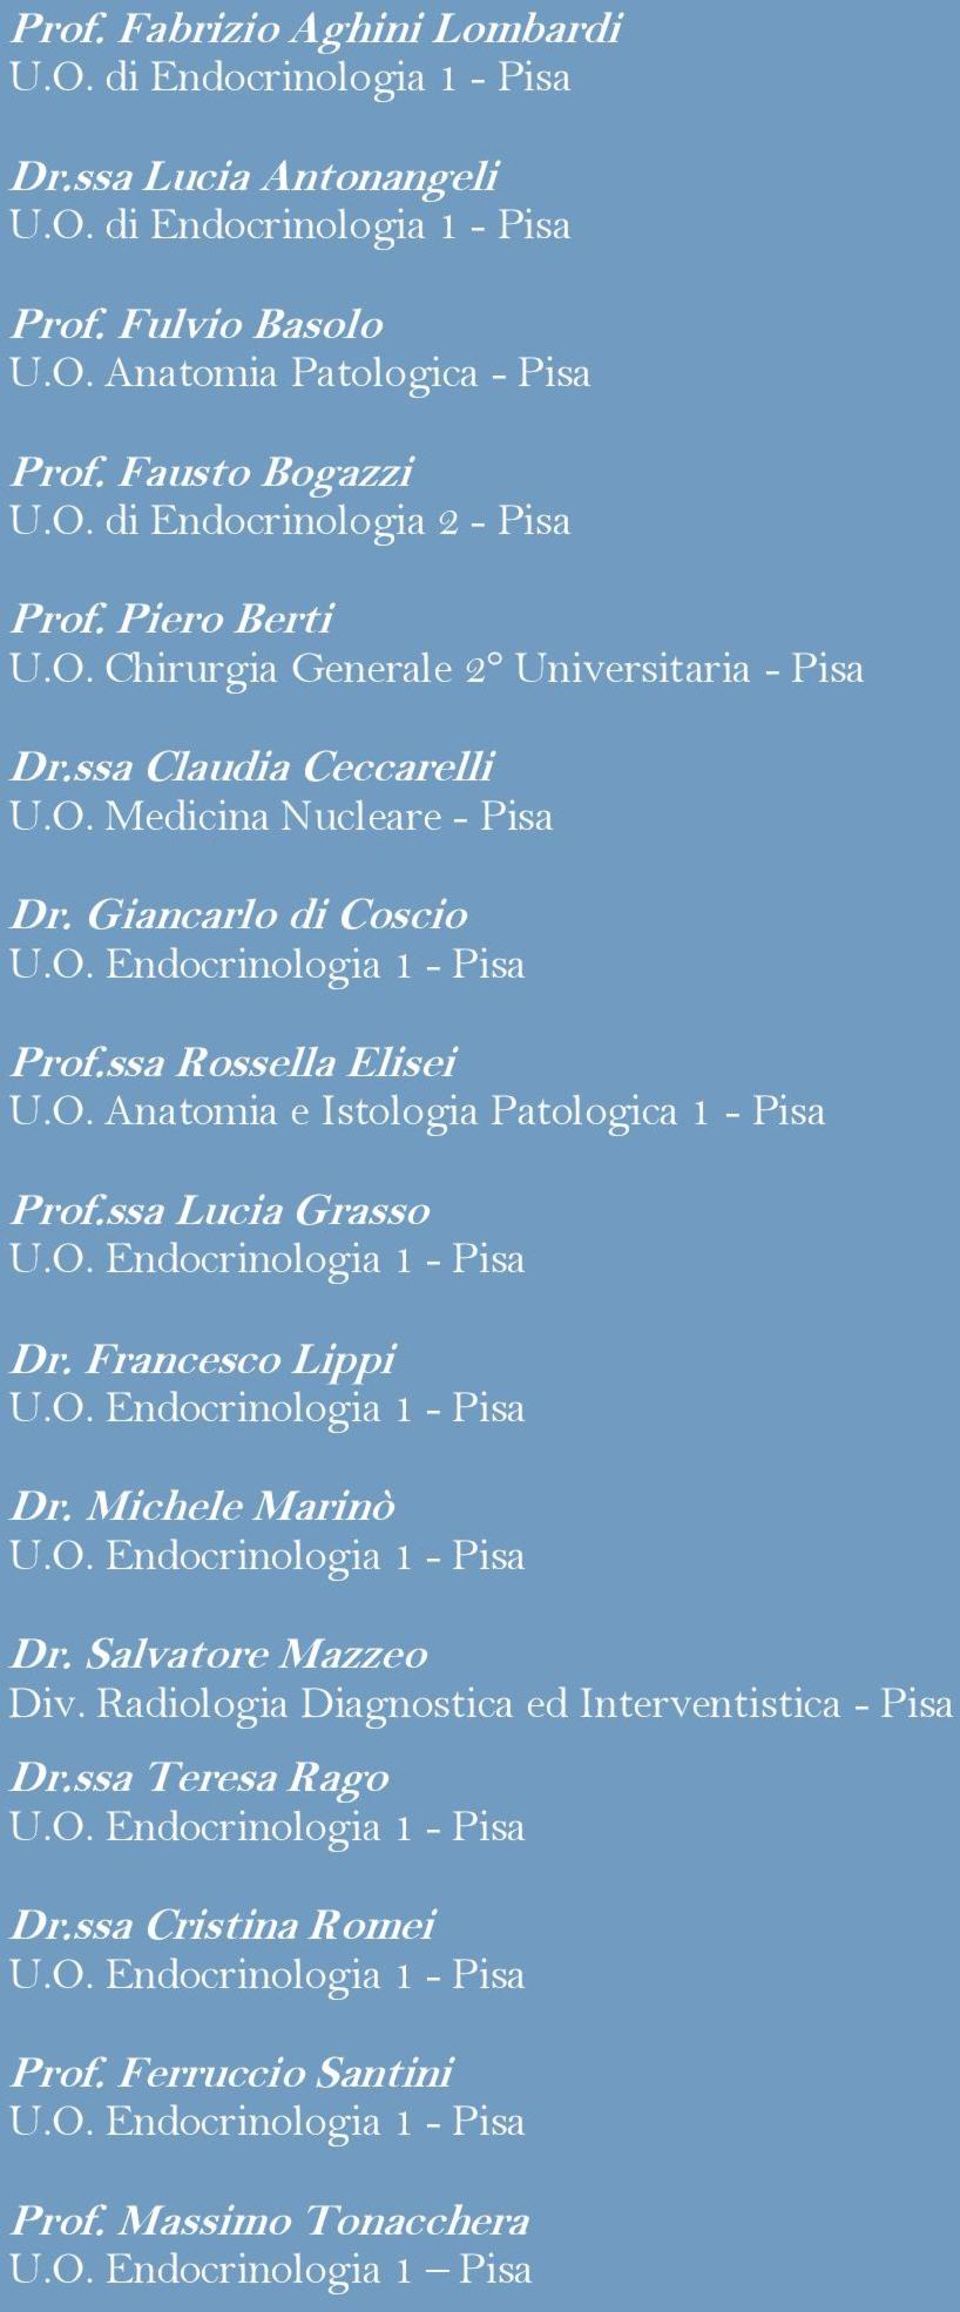 Giancarlo di Coscio Prof.ssa Rossella Elisei U.O. Anatomia e Istologia Patologica 1 - Pisa Prof.ssa Lucia Grasso Dr. Francesco Lippi Dr. Michele Marinò Dr.